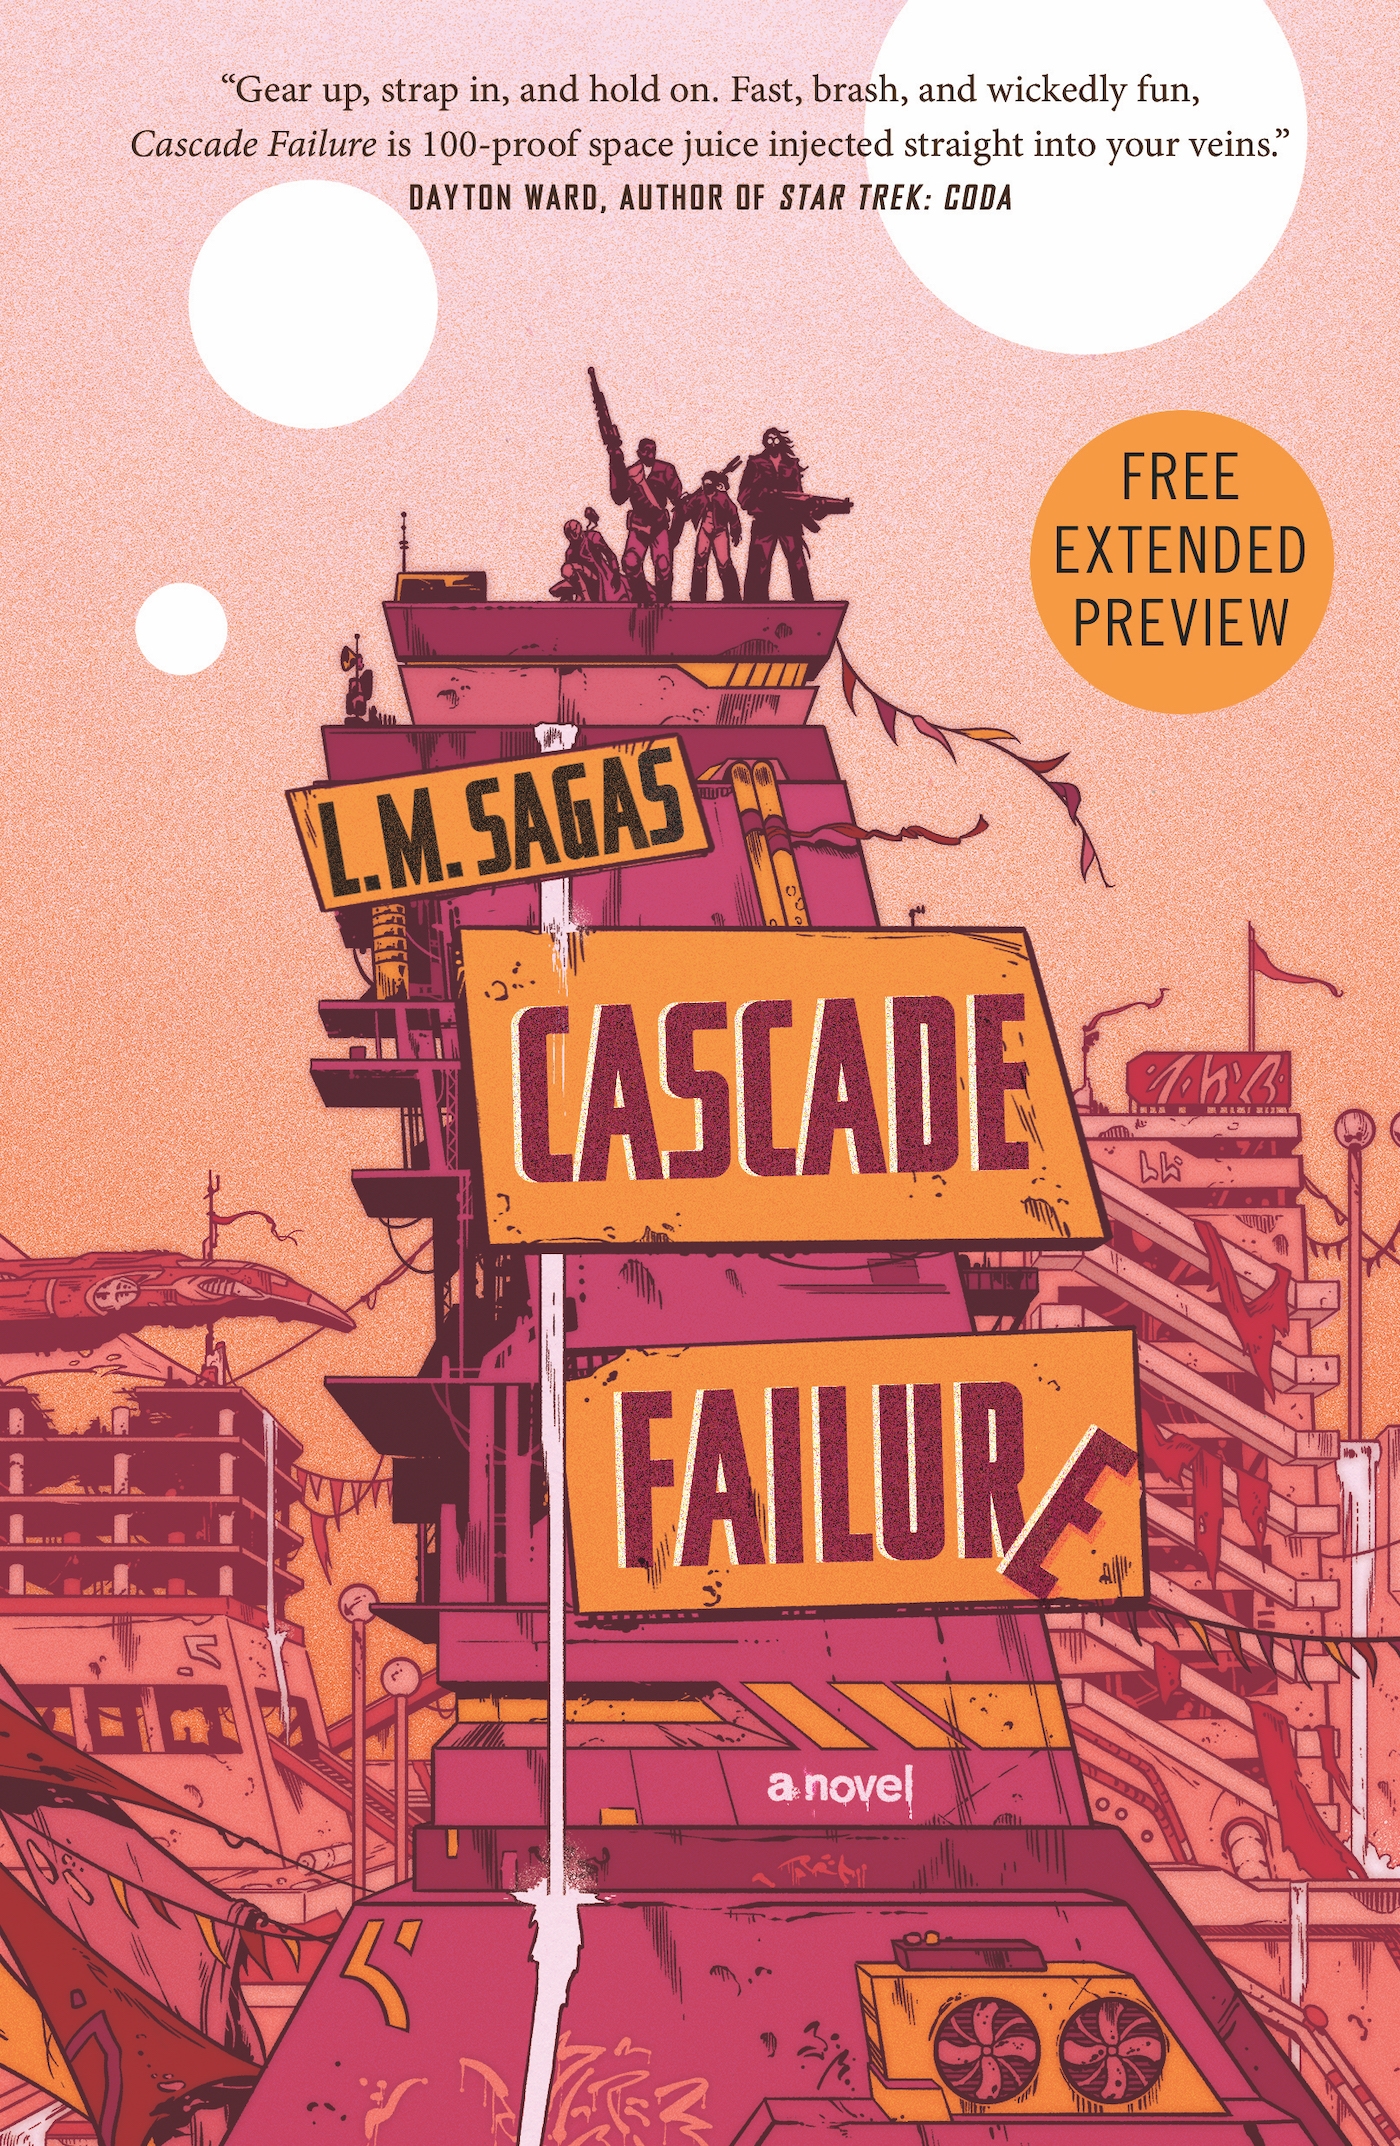 Sneak Peek for Cascade Failure by L. M. Sagas